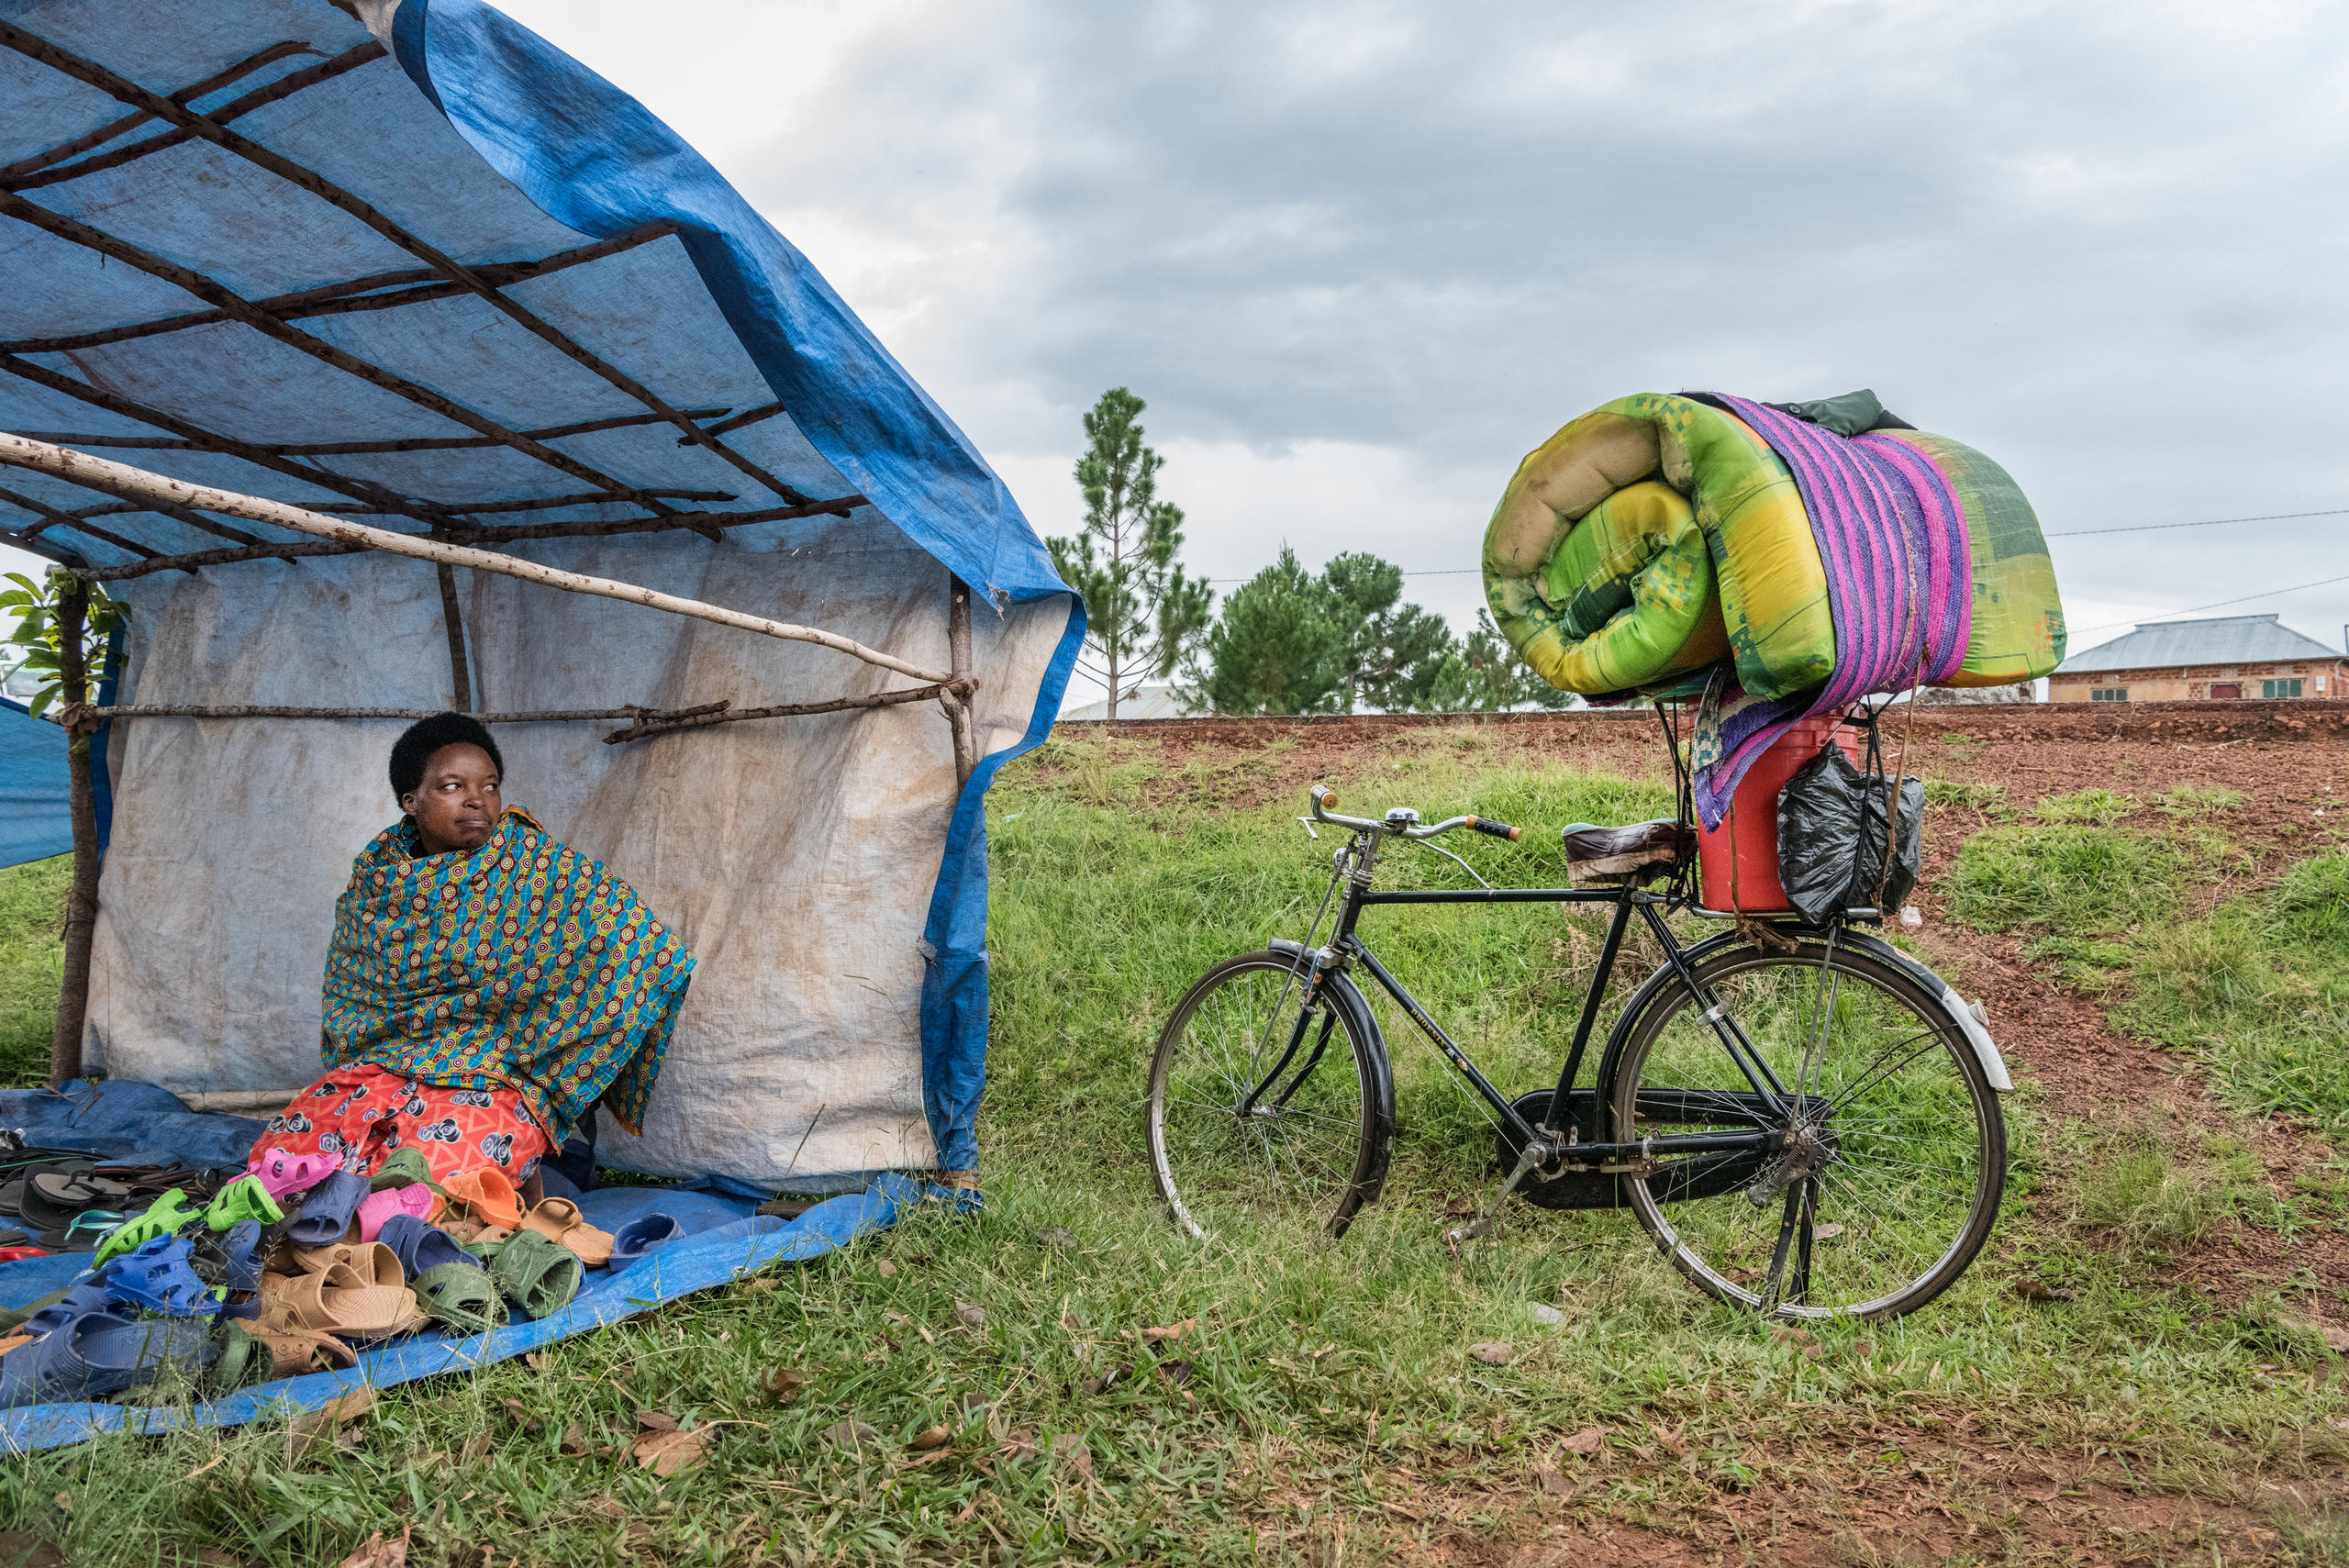 La femme est assise dans une tente, le vélo à côté d elle est chargé.